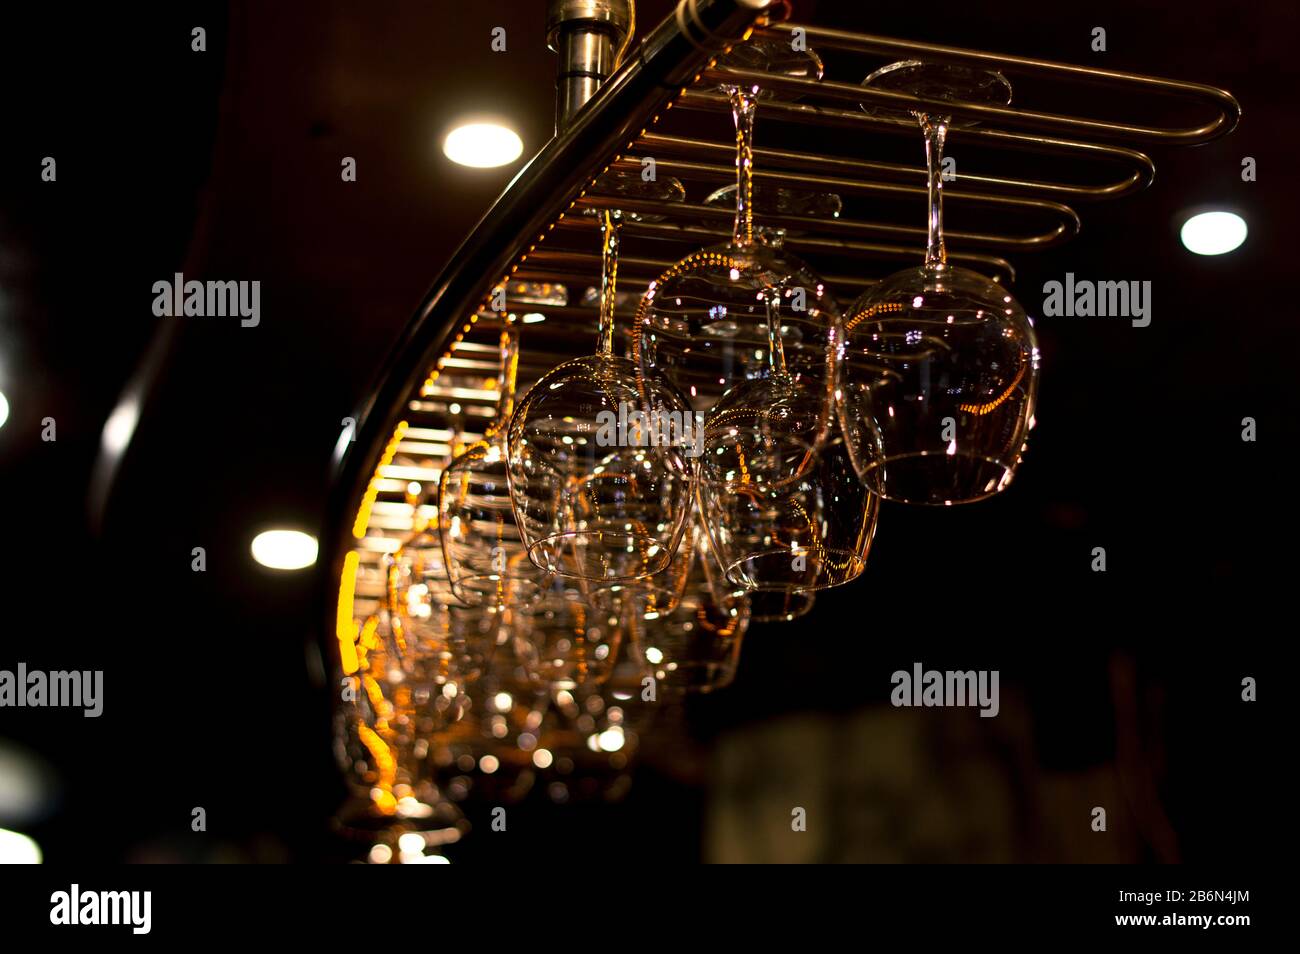 Weingläser, Gläser, Gläser, wiegen über einen Tisch. Entwickelt für jeden Drink und Glanz und Schimmer im Licht. Stockfoto